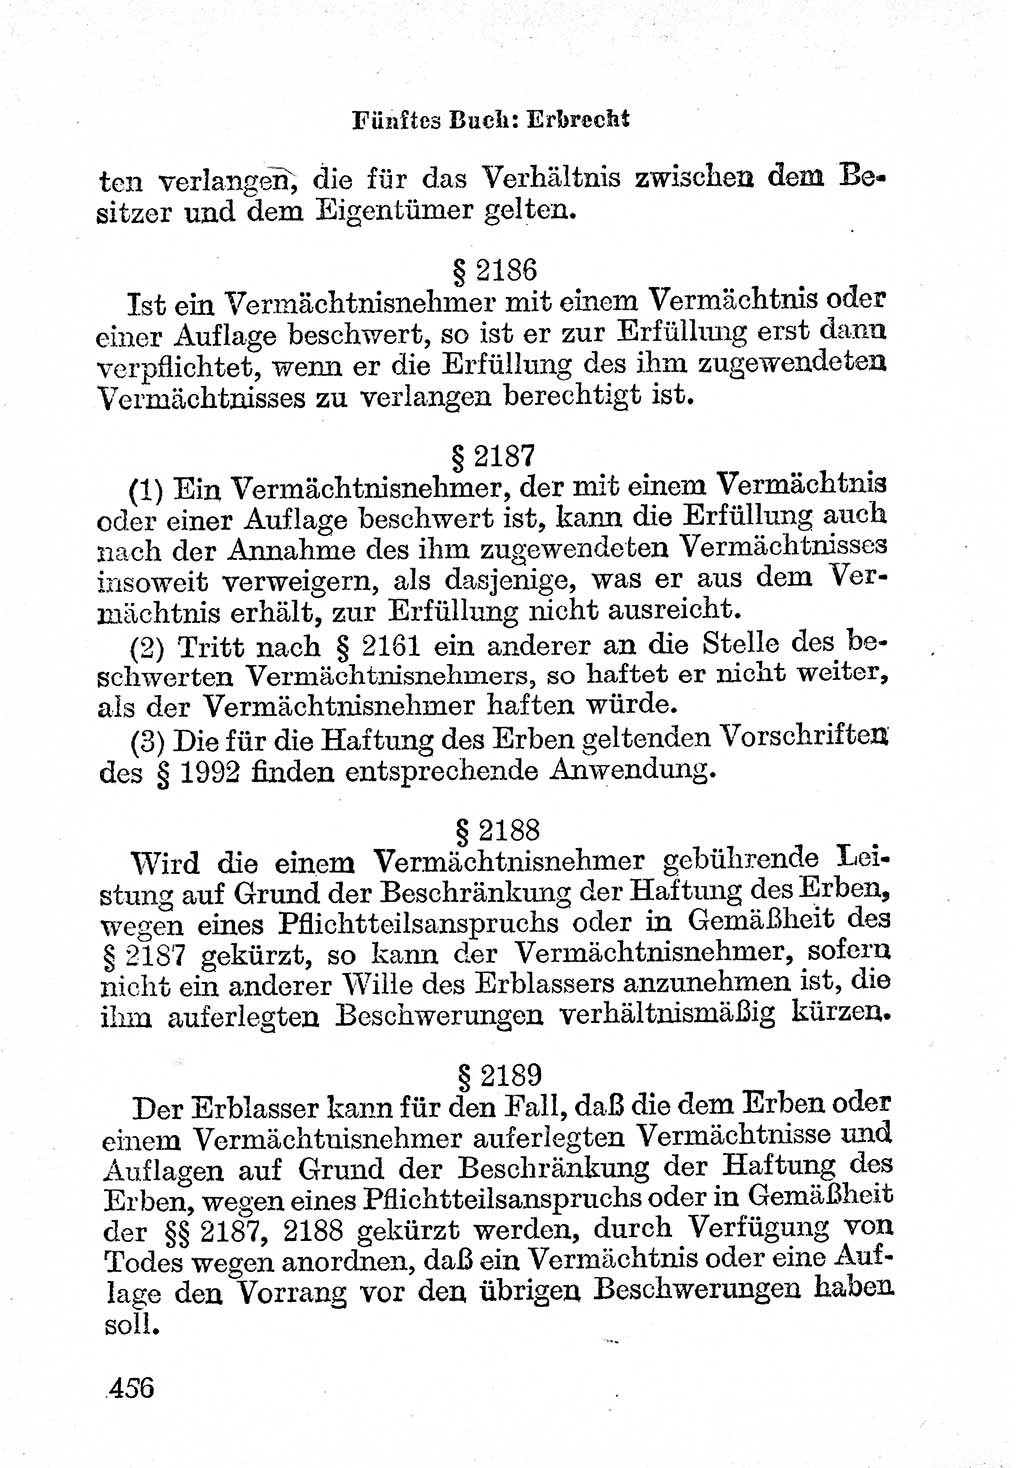 Bürgerliches Gesetzbuch (BGB) nebst wichtigen Nebengesetzen [Deutsche Demokratische Republik (DDR)] 1956, Seite 456 (BGB Nebenges. DDR 1956, S. 456)